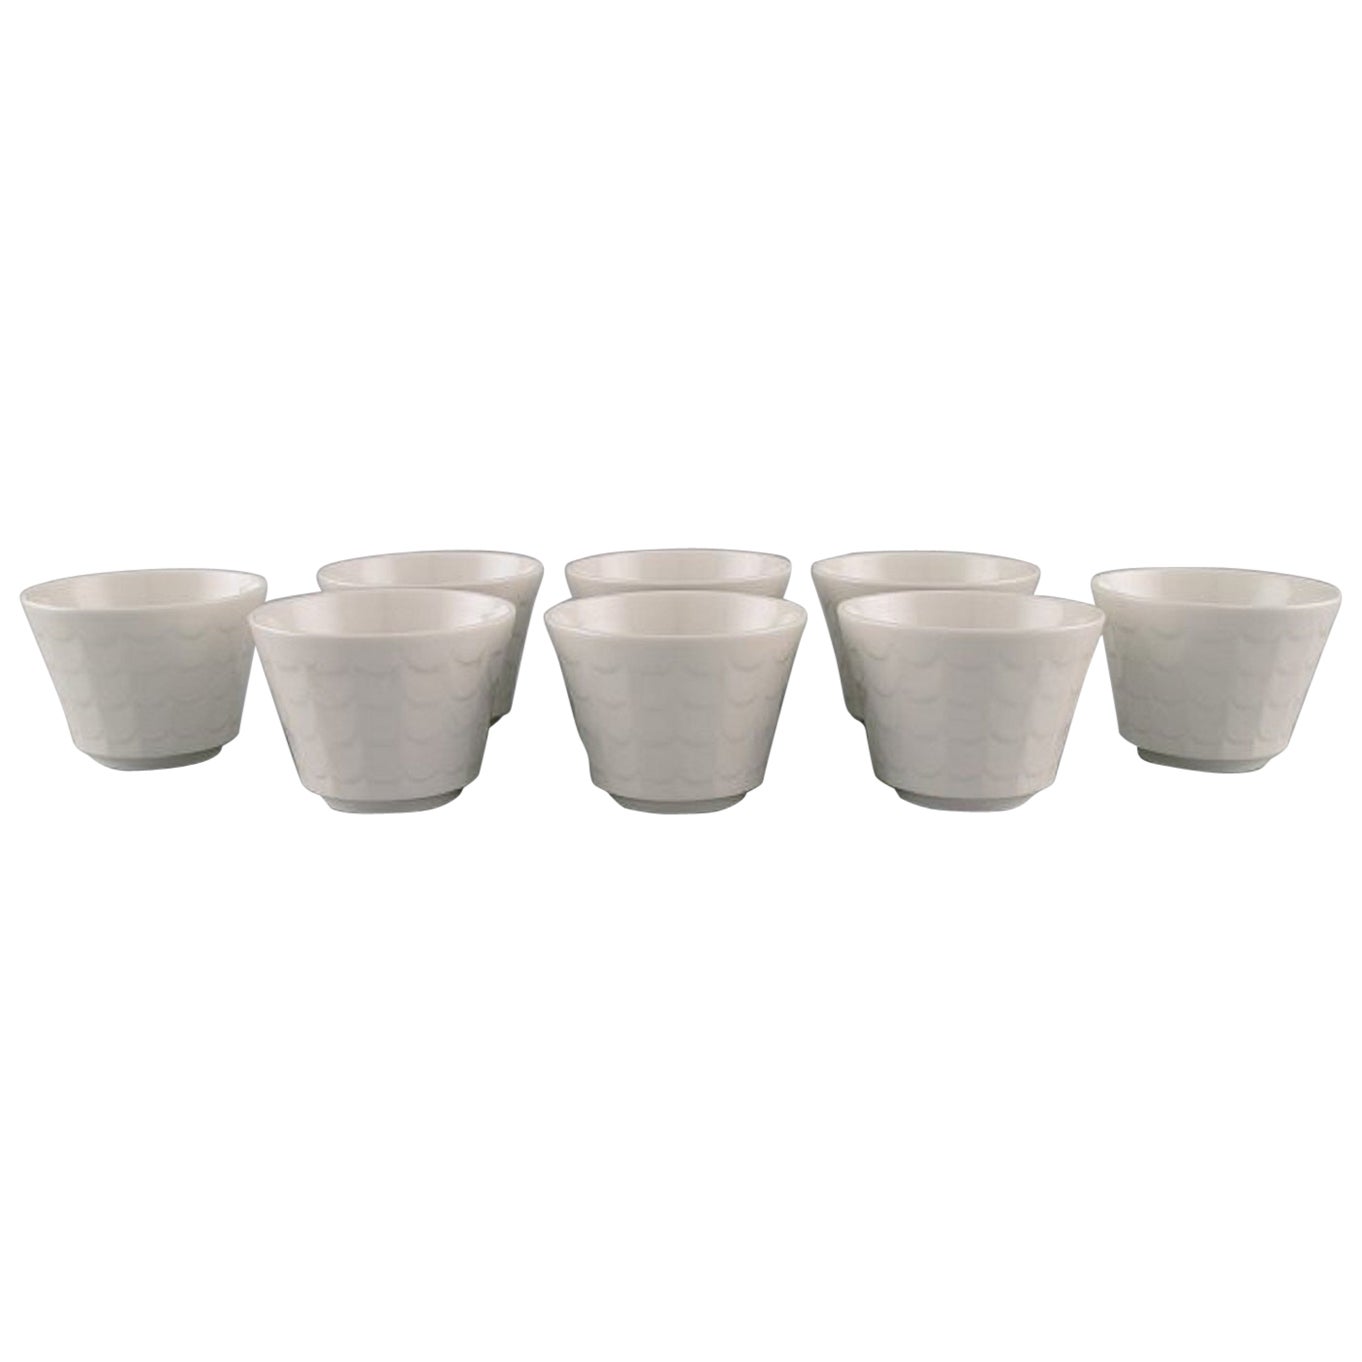 Wilhelm Kåge for Gustavsberg, Eight Cups in White Glazed Porcelain